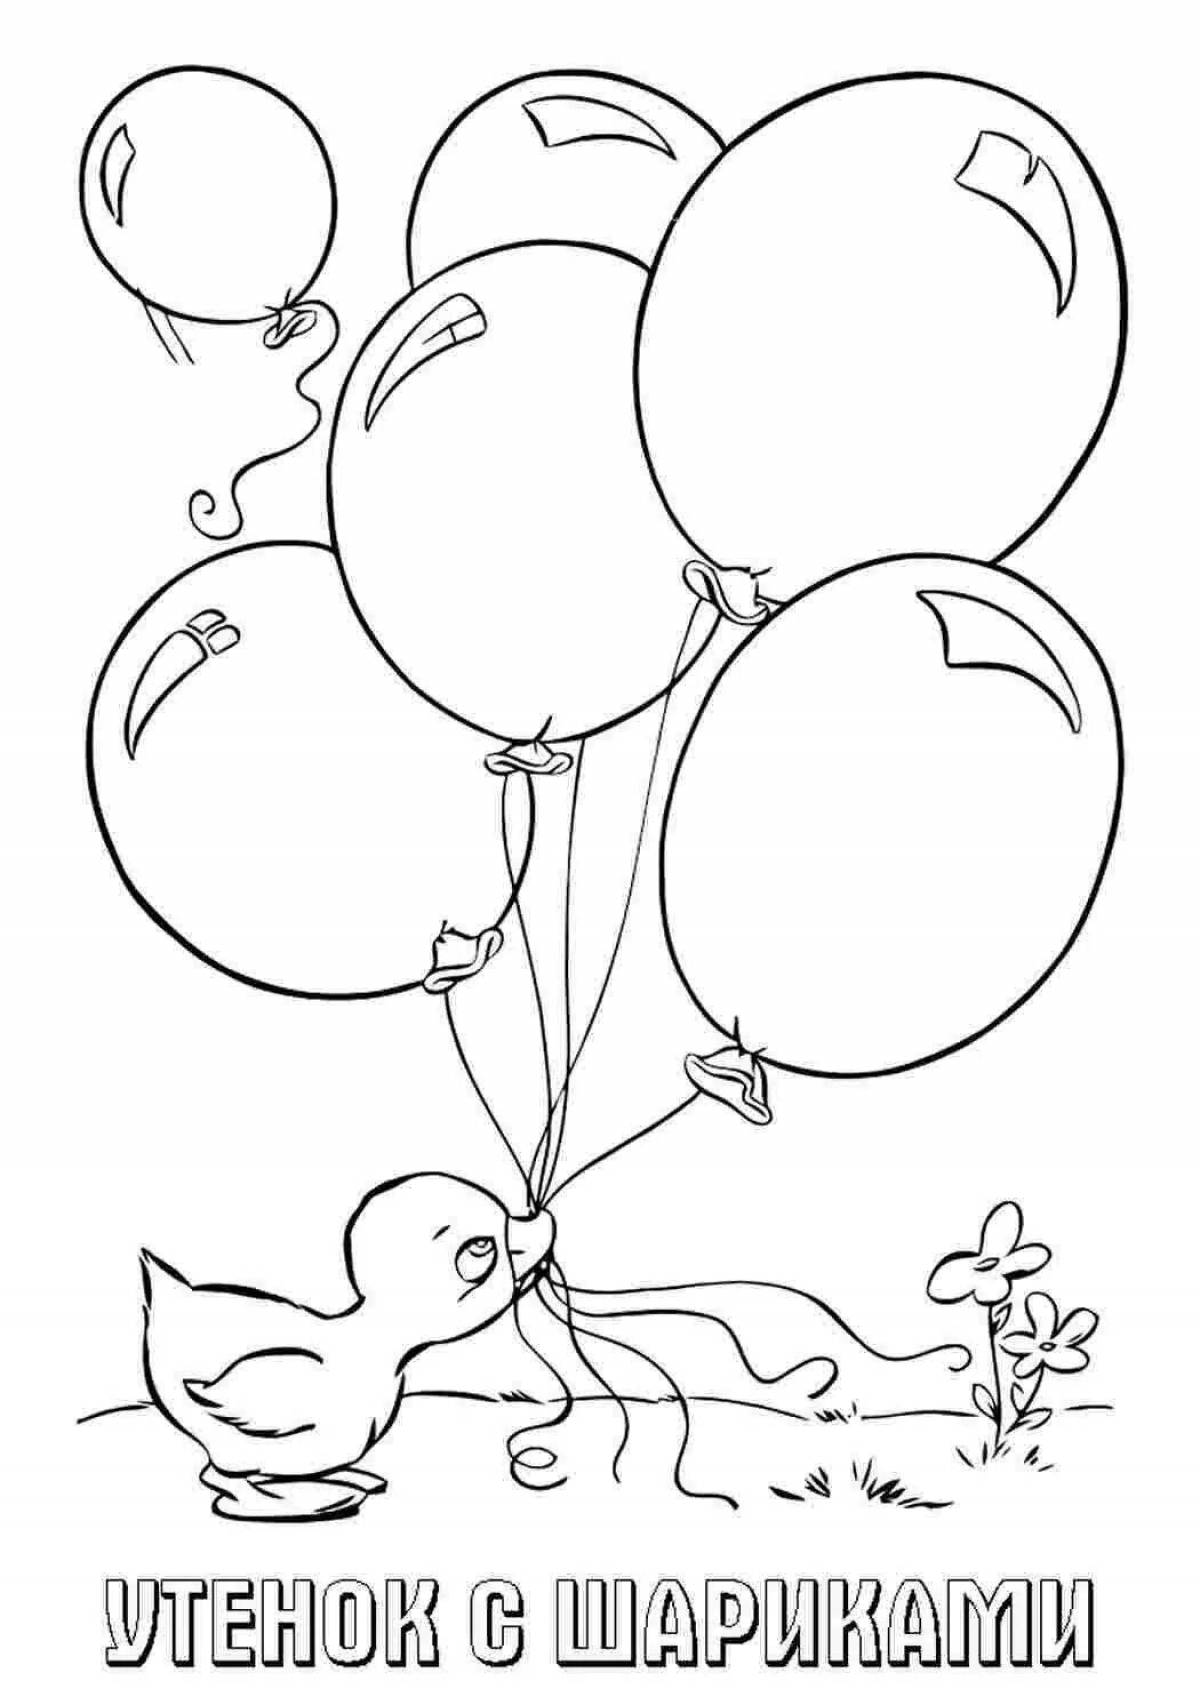 Плавающие воздушные шары для детей 2-3 лет